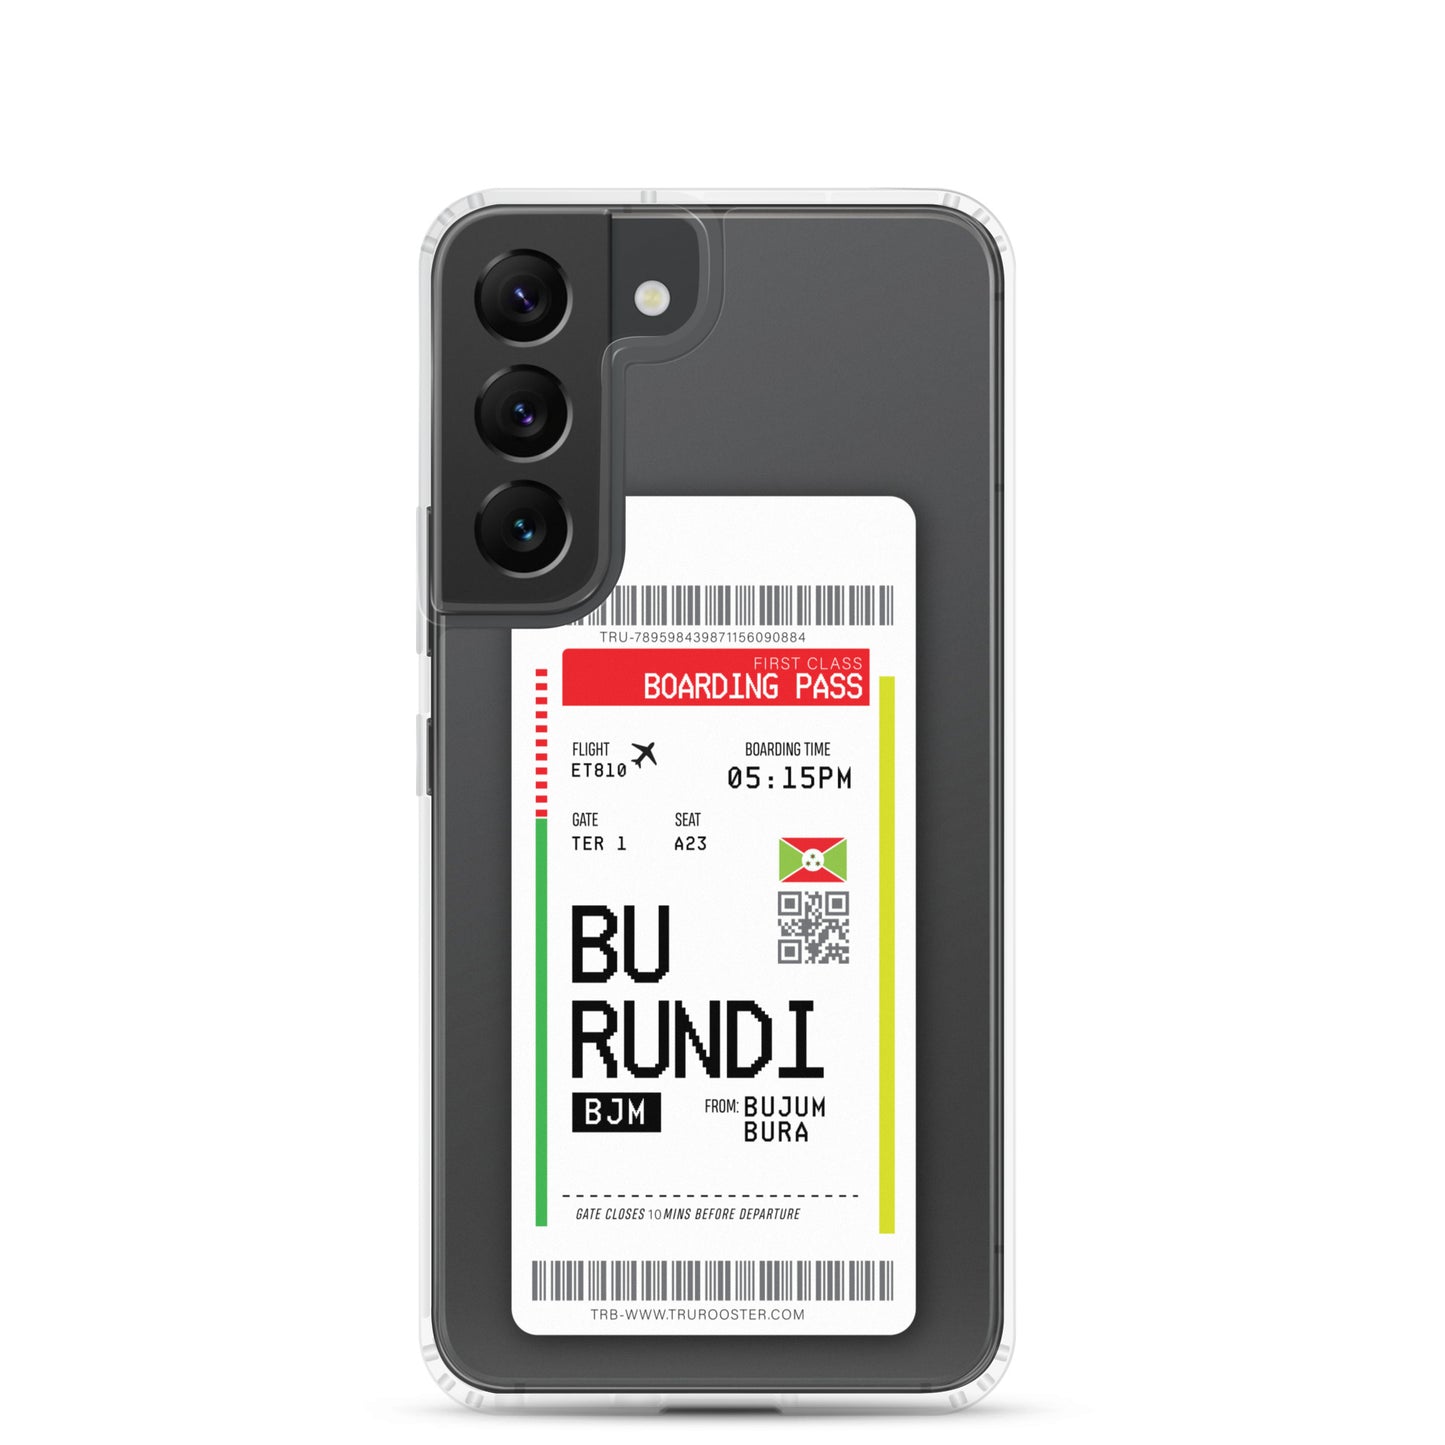 Burundi Transit Boarding Pass Samsung Case